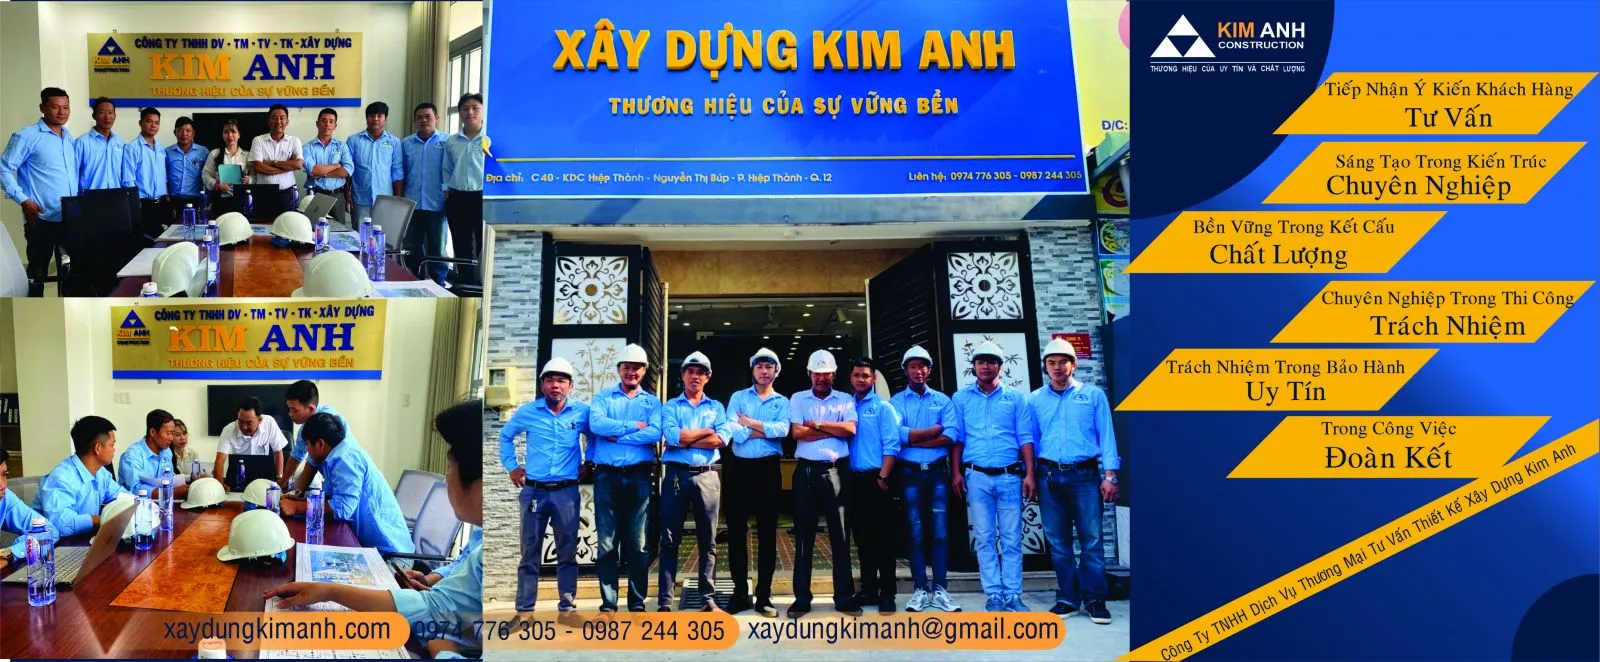 Bảng đơn giá xây nhà phần thô tại Xây Dựng Kim Anh-xaydungkimanh.com